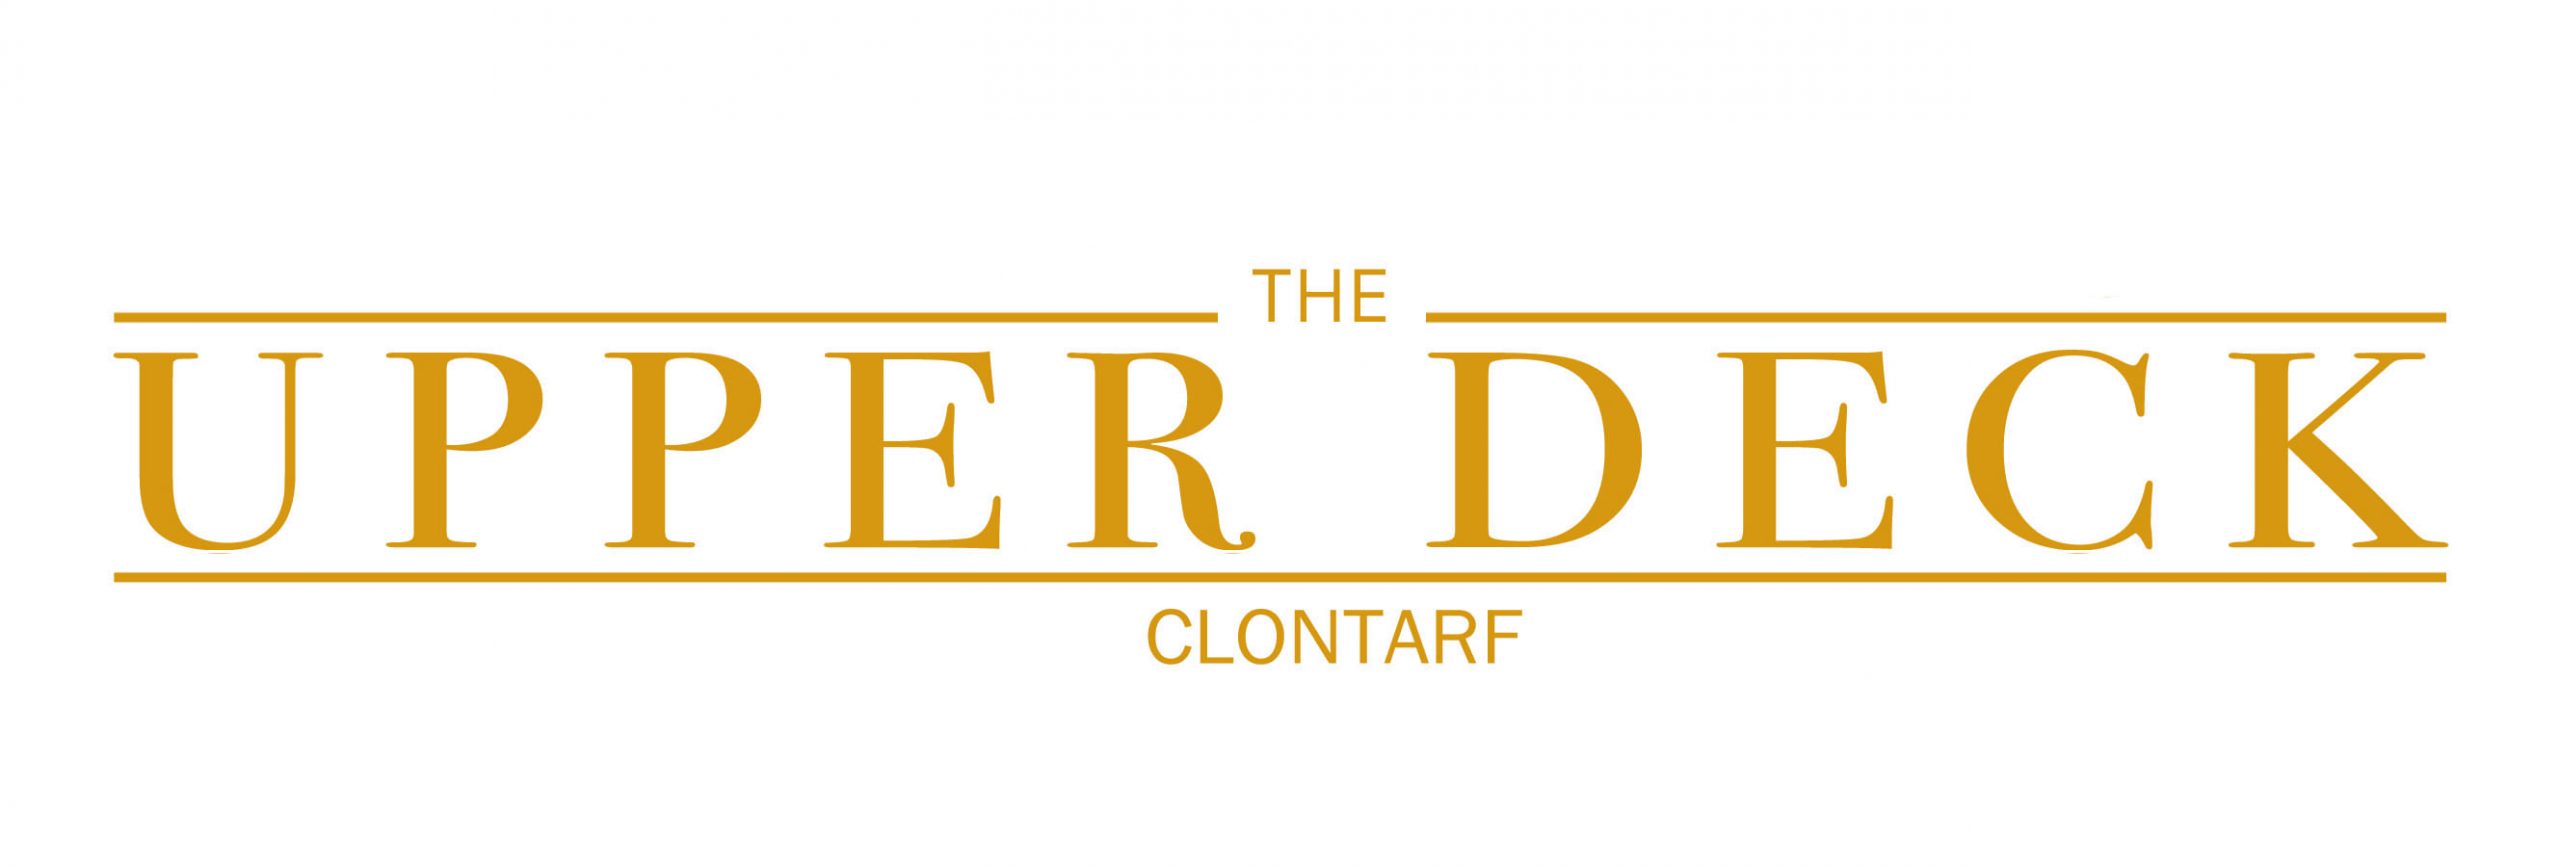 The Upper Deck Clontarf